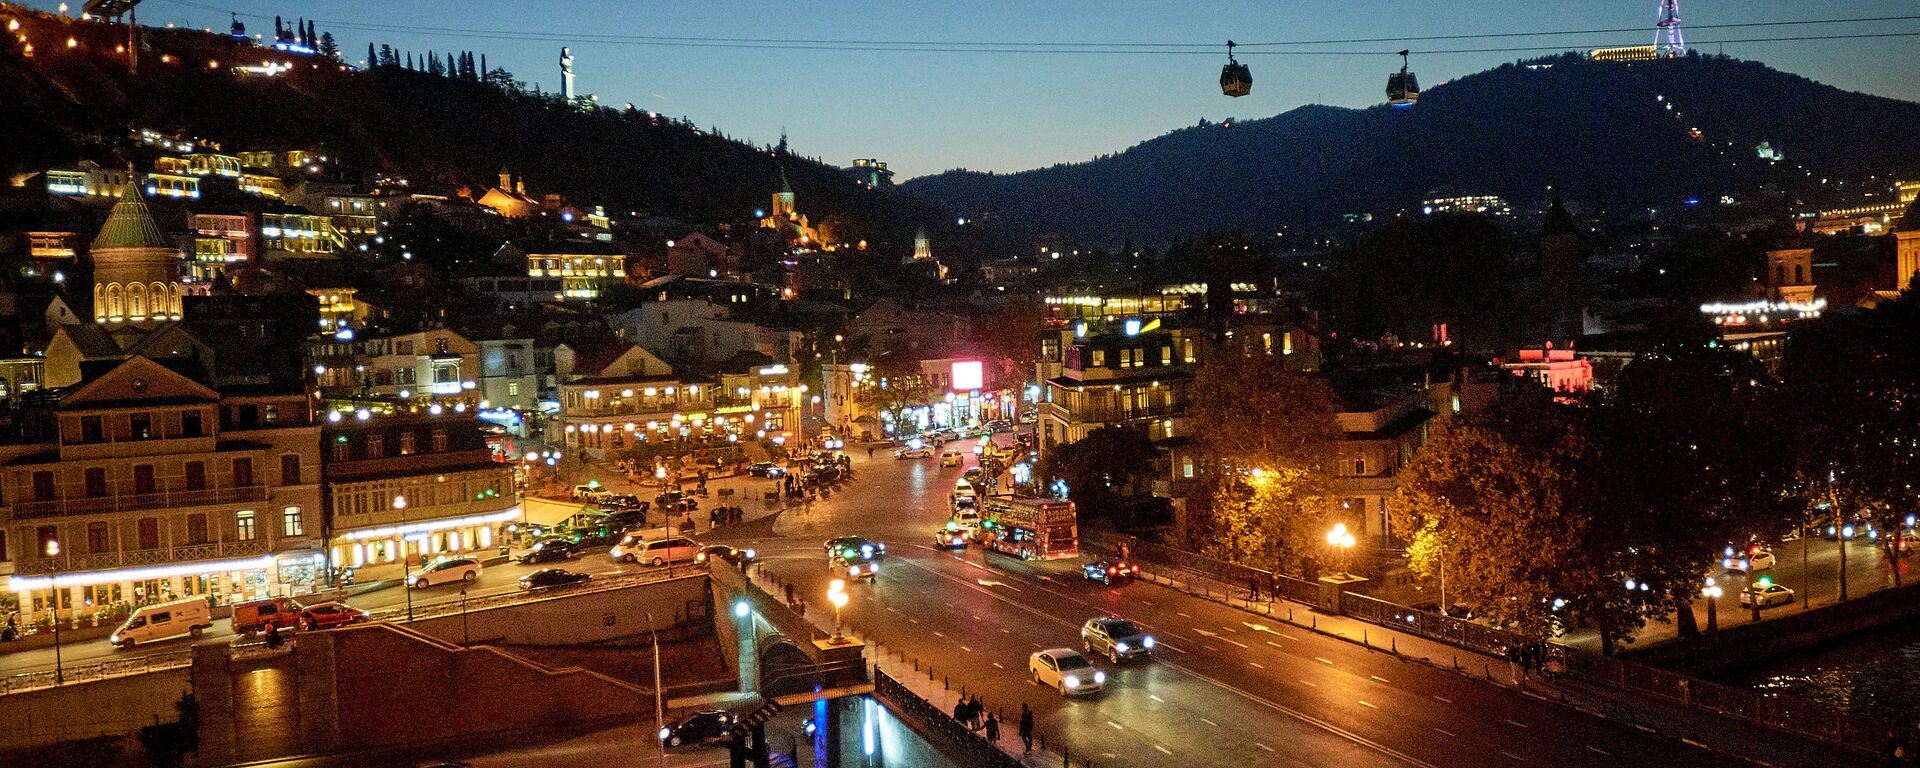 Ночной вид на город Тбилиси - центр столицы, видна гора Мтацминда с телевышкой, а на переднем плане - Мейдан и старый город - Sputnik Грузия, 1920, 17.10.2021